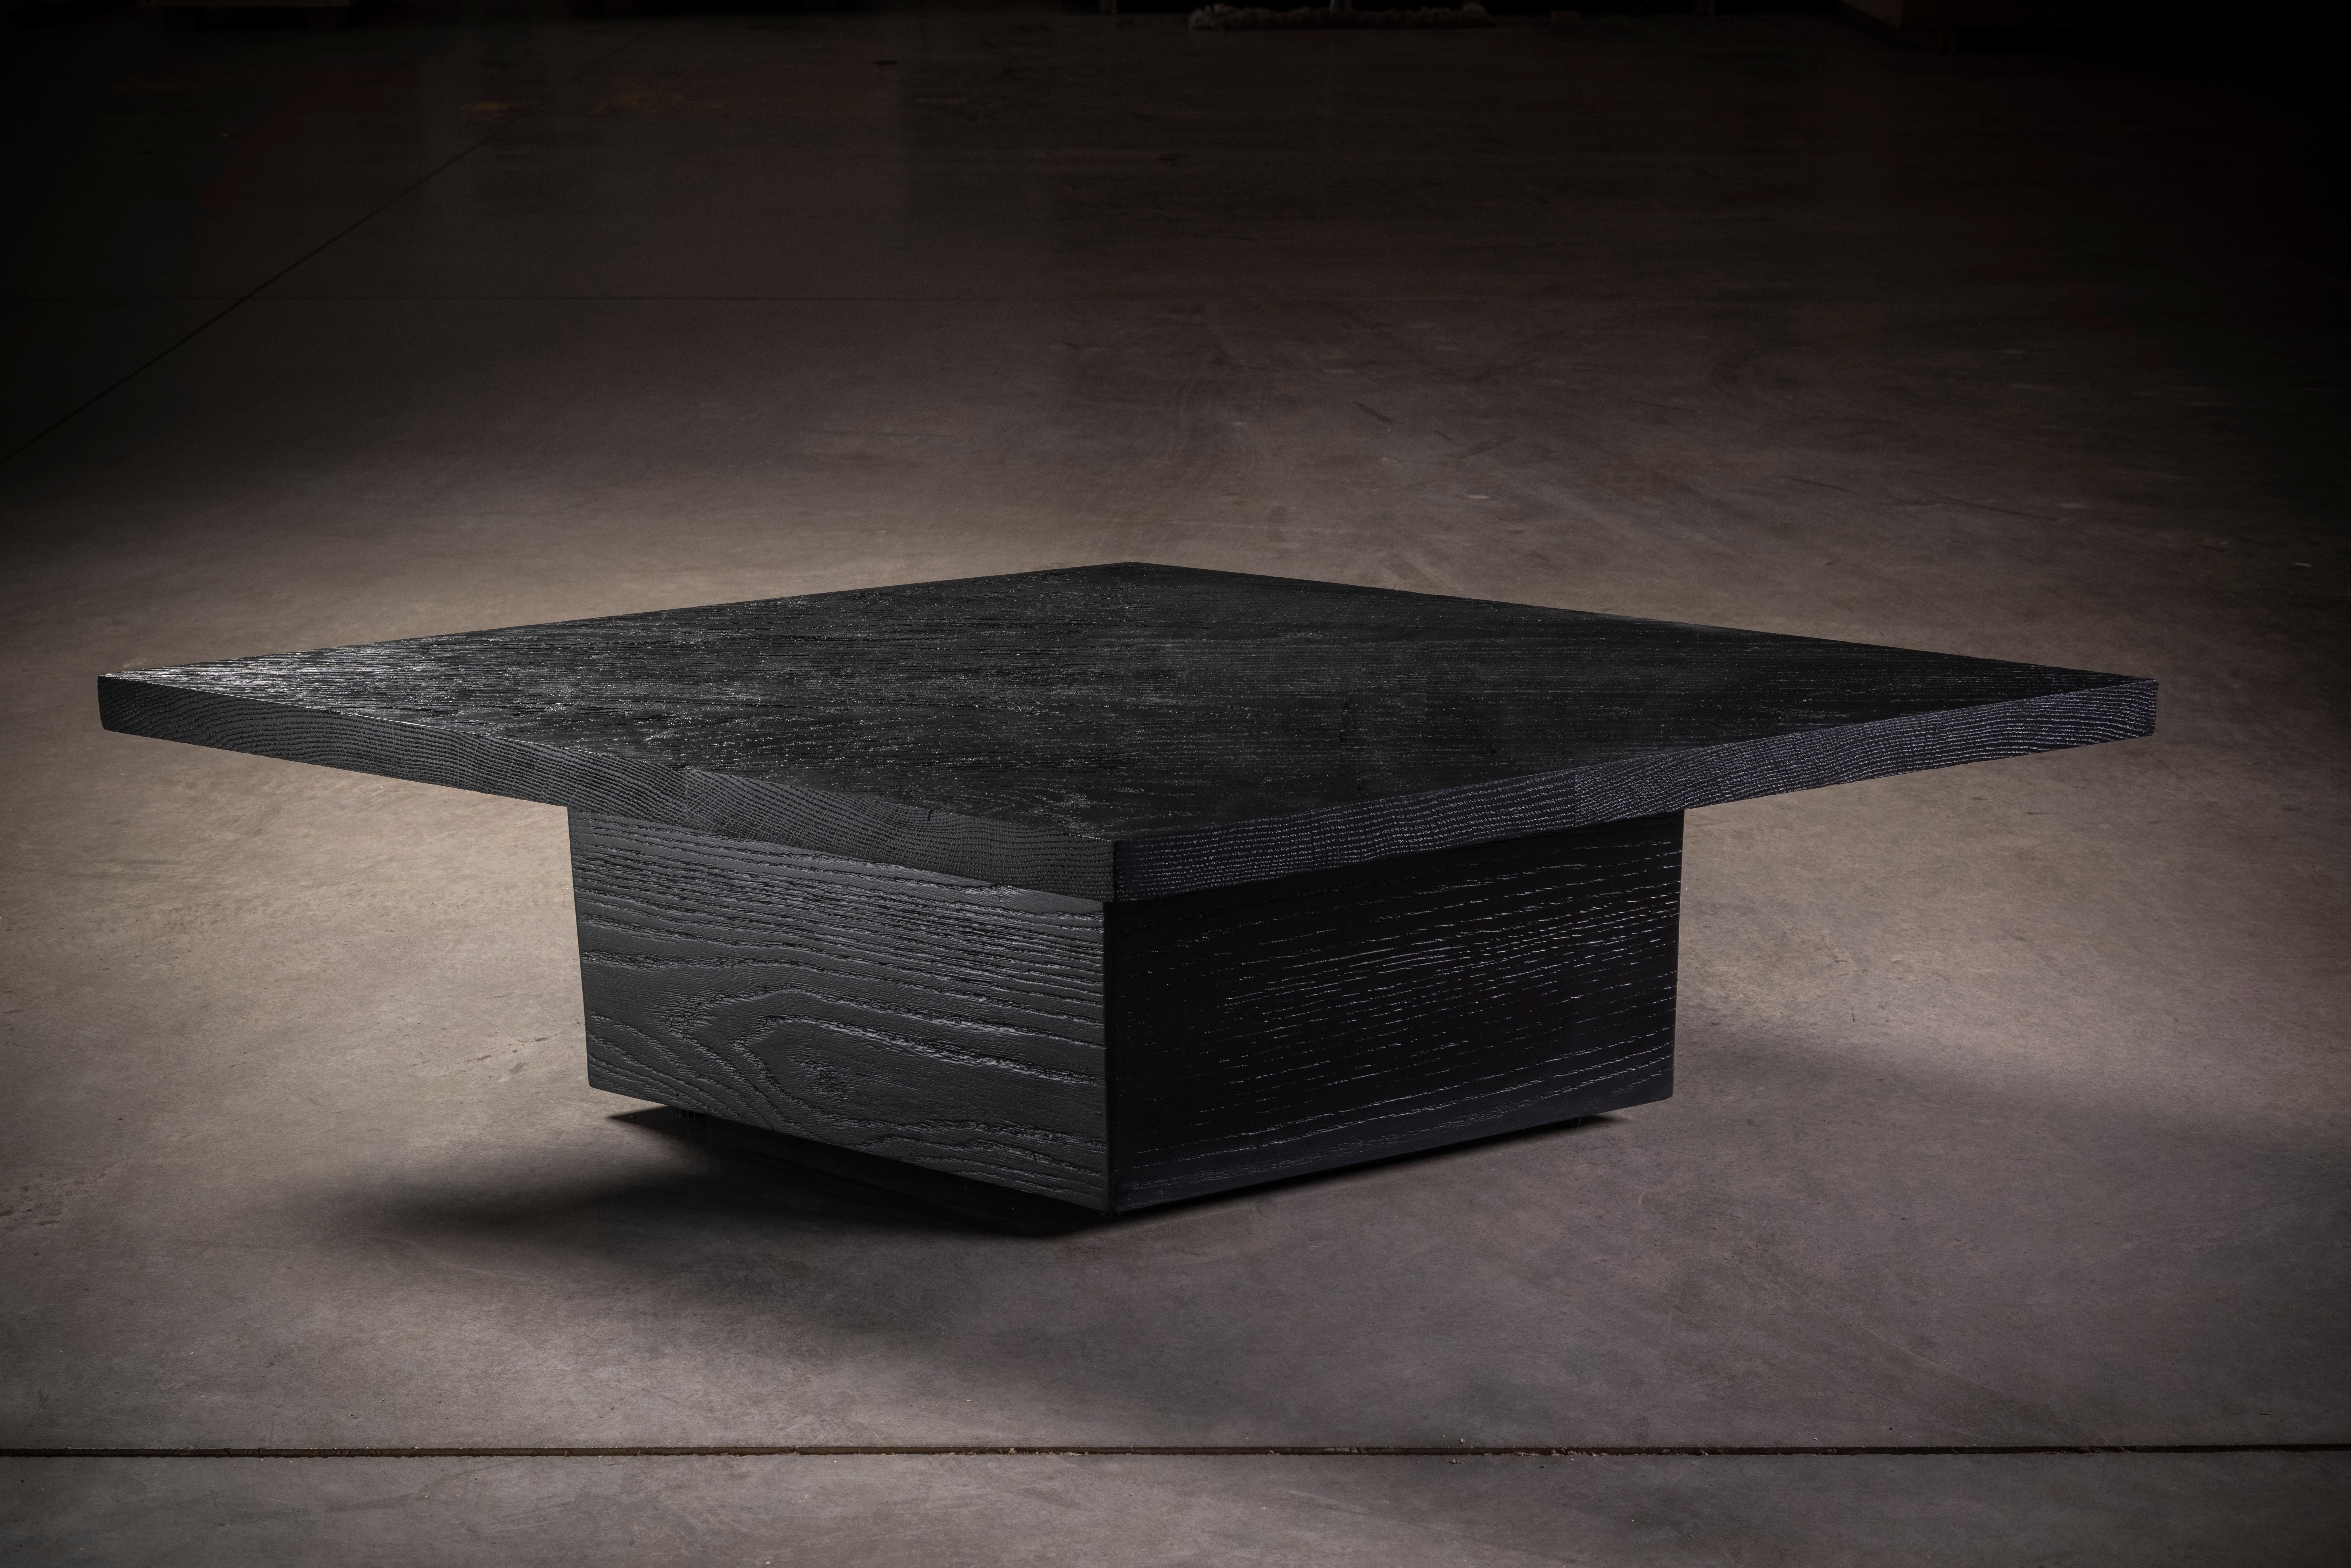 Massiver Esstisch aus schwarzer Eiche mit rautenförmiger Tischplatte und Sockel.

